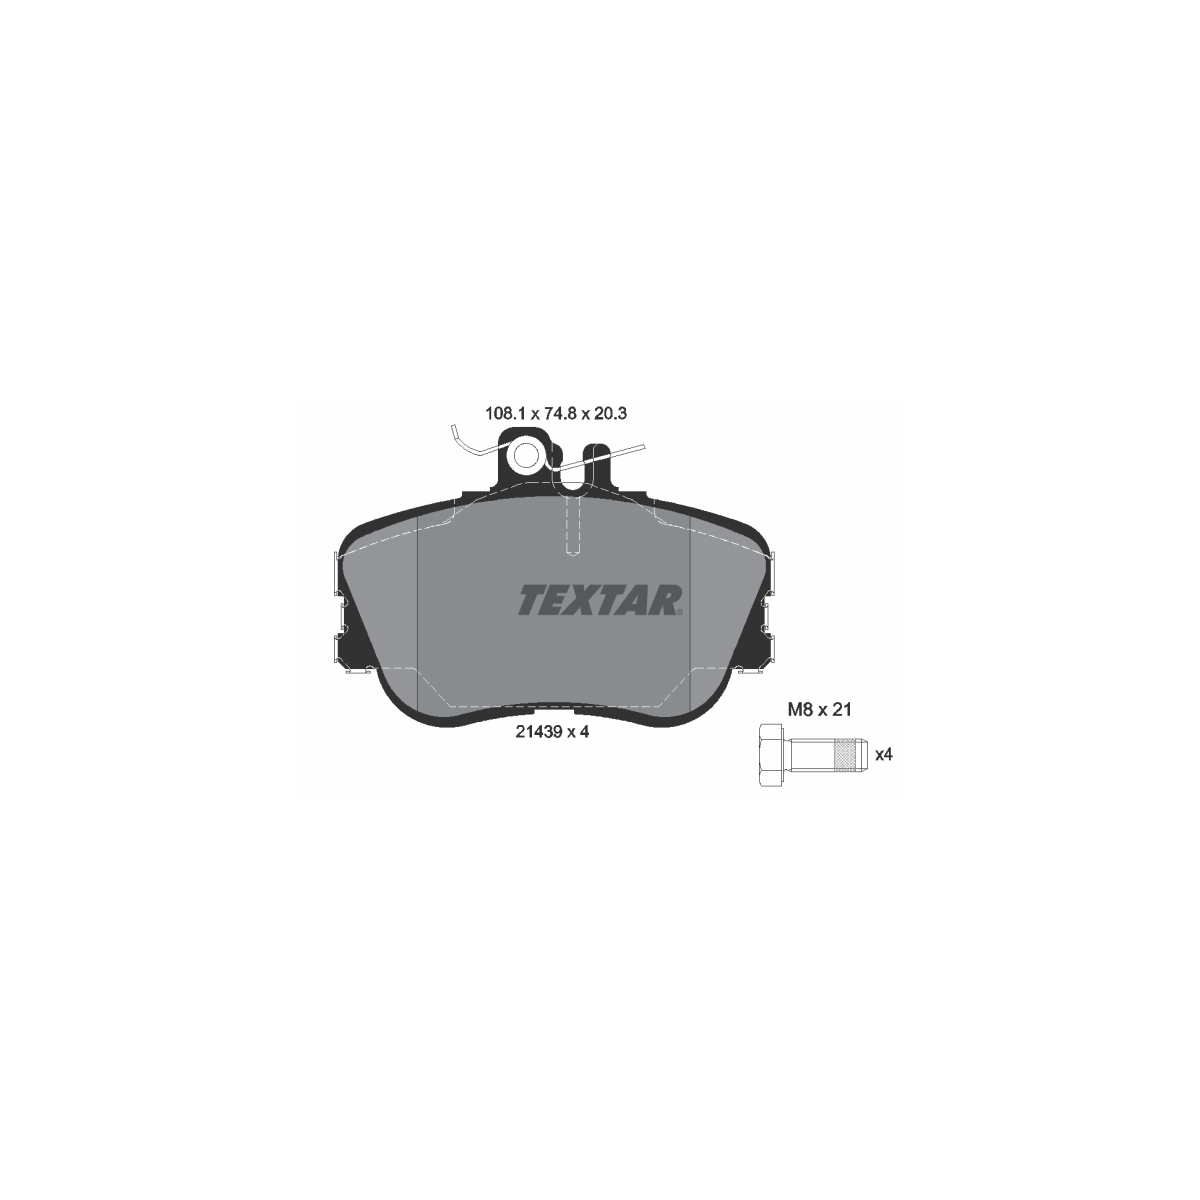 TEXTAR Bremsscheiben + Beläge + Wako MERCEDES W202 Limousine C180 C200/220/250D vorne